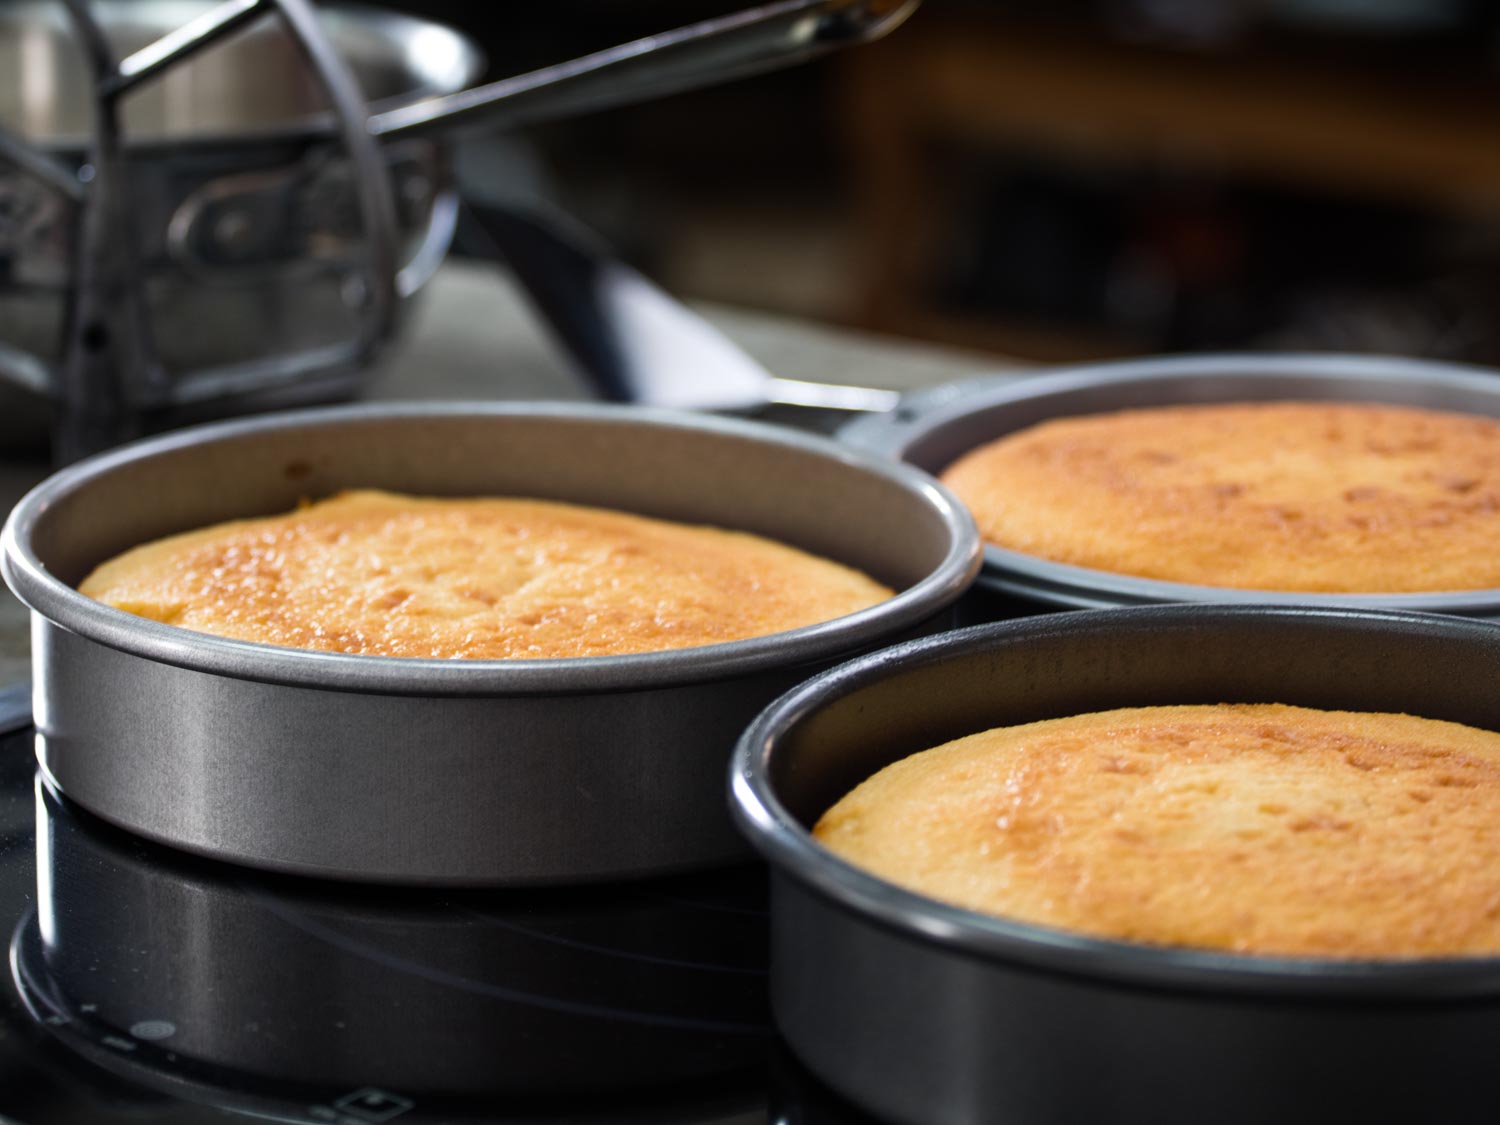 Cake pans